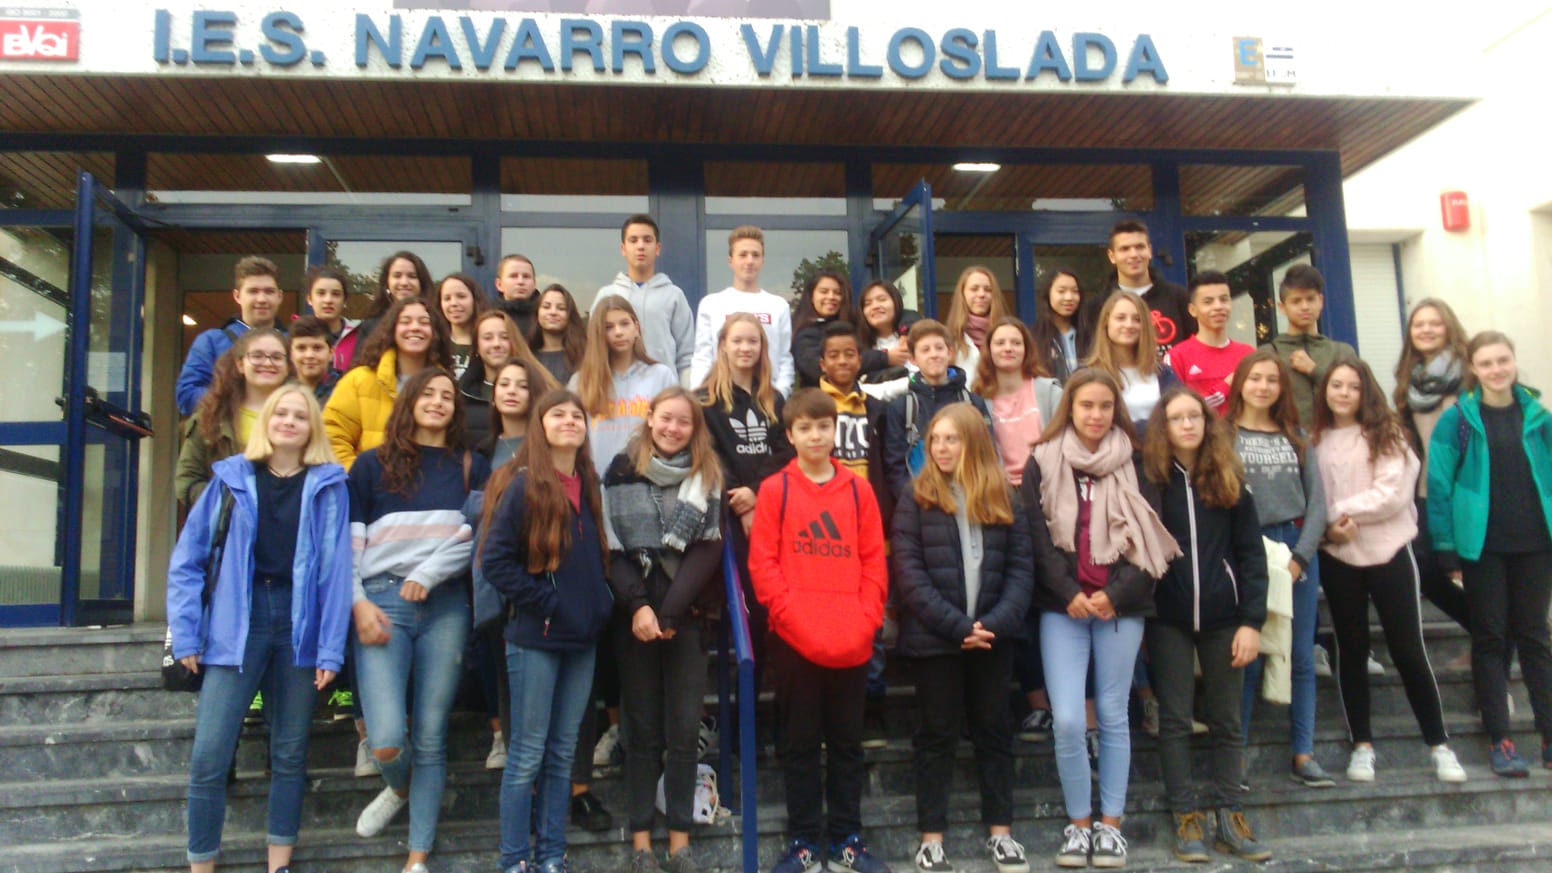 El alumnado alemán se va de IES Navarro Villoslada esperando la visita de vuelta